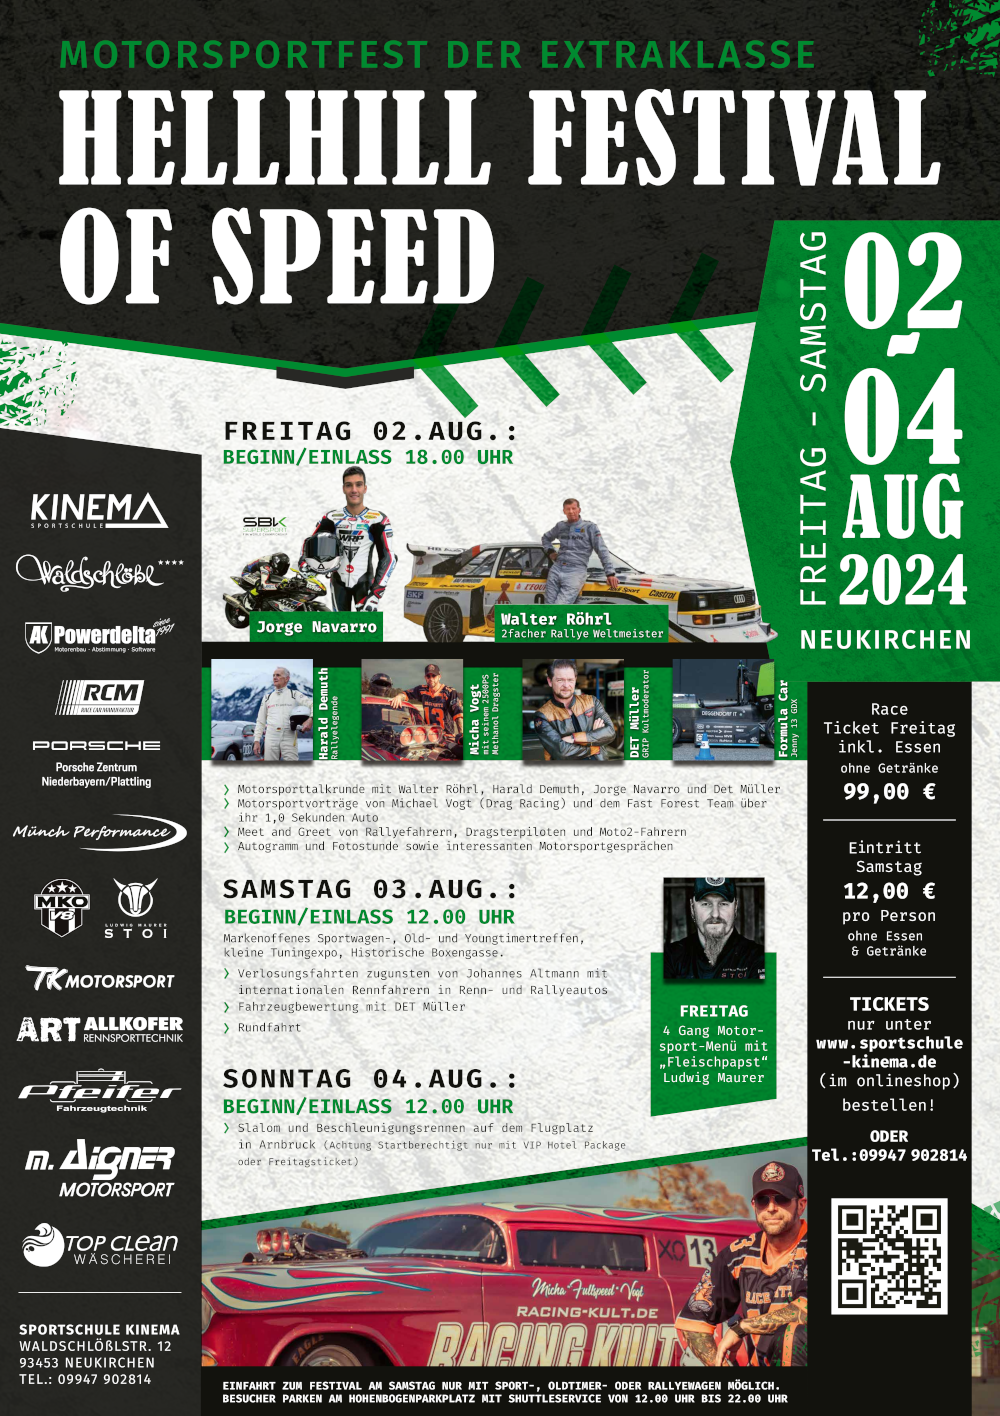 Motorsportfest der Extraklasse - Hellhill Festival of Speed